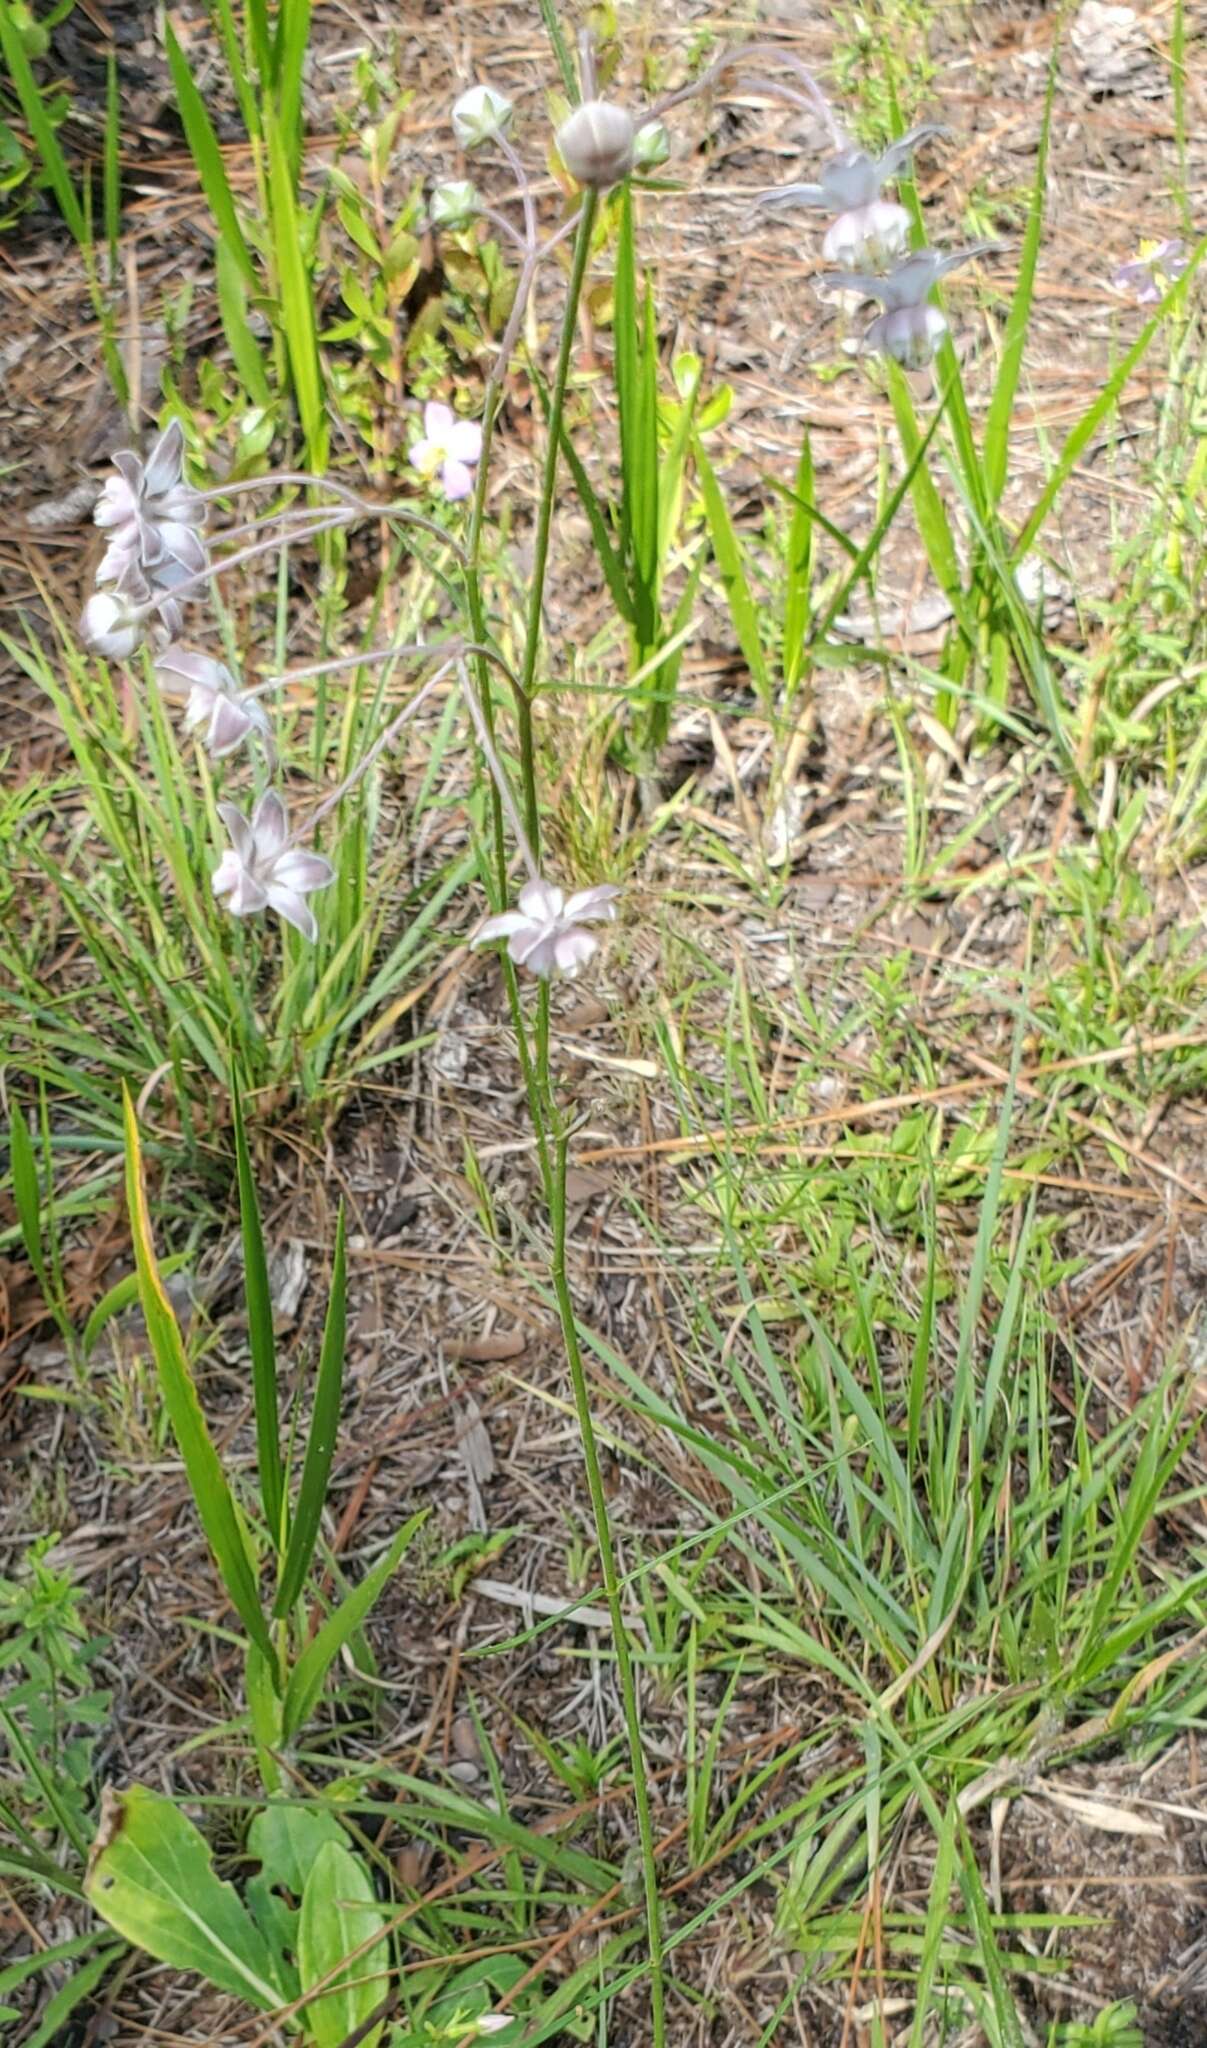 Image of Carolina milkweed